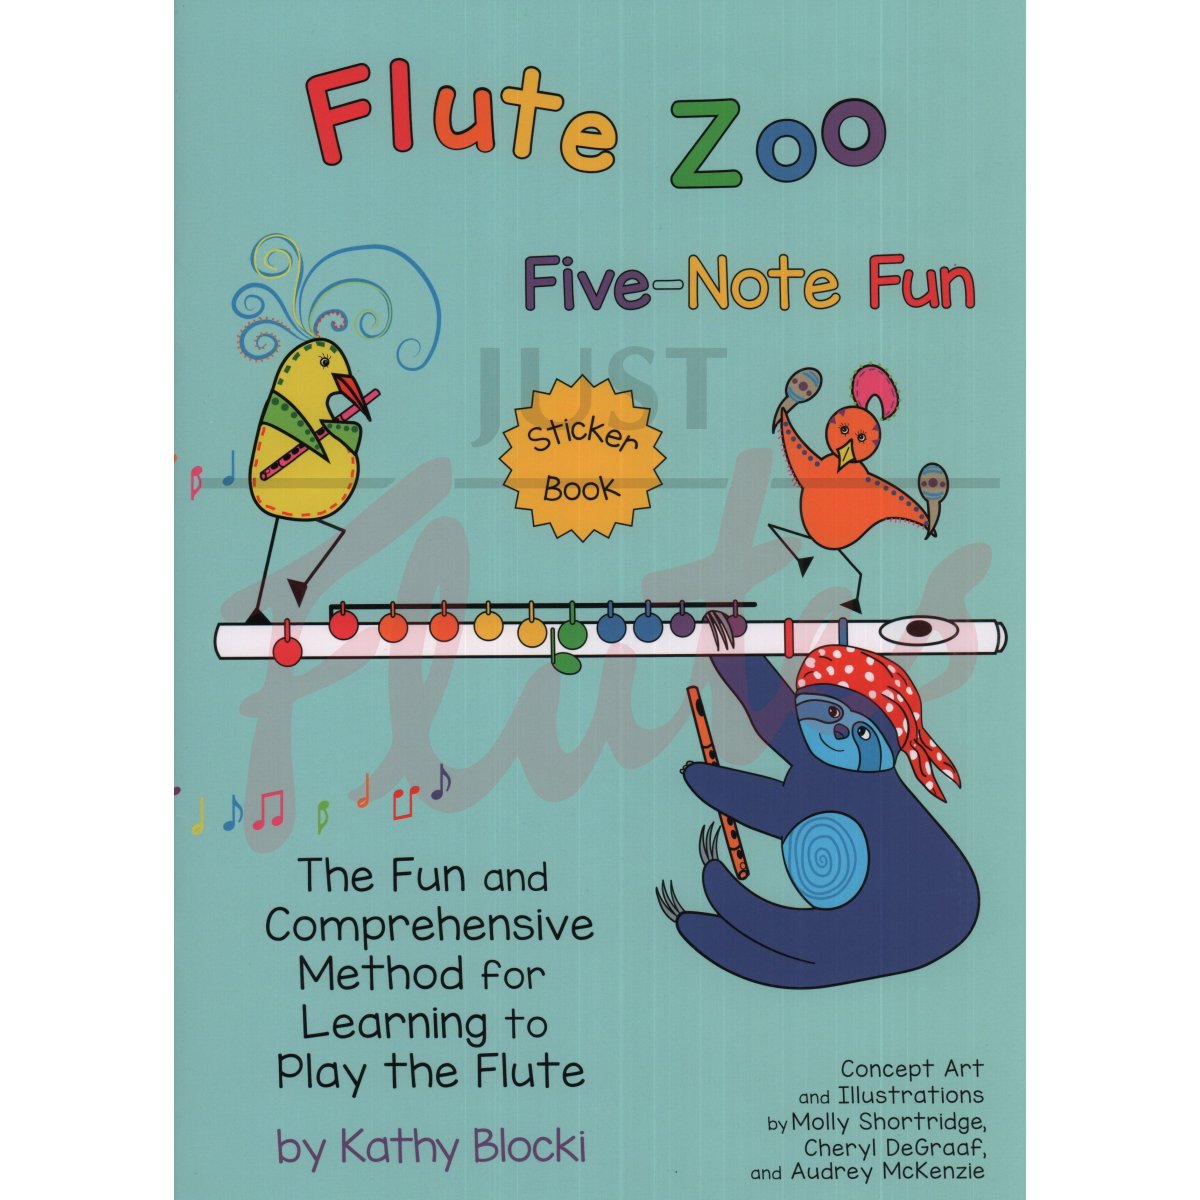 Flute Zoo Five-Note Fun